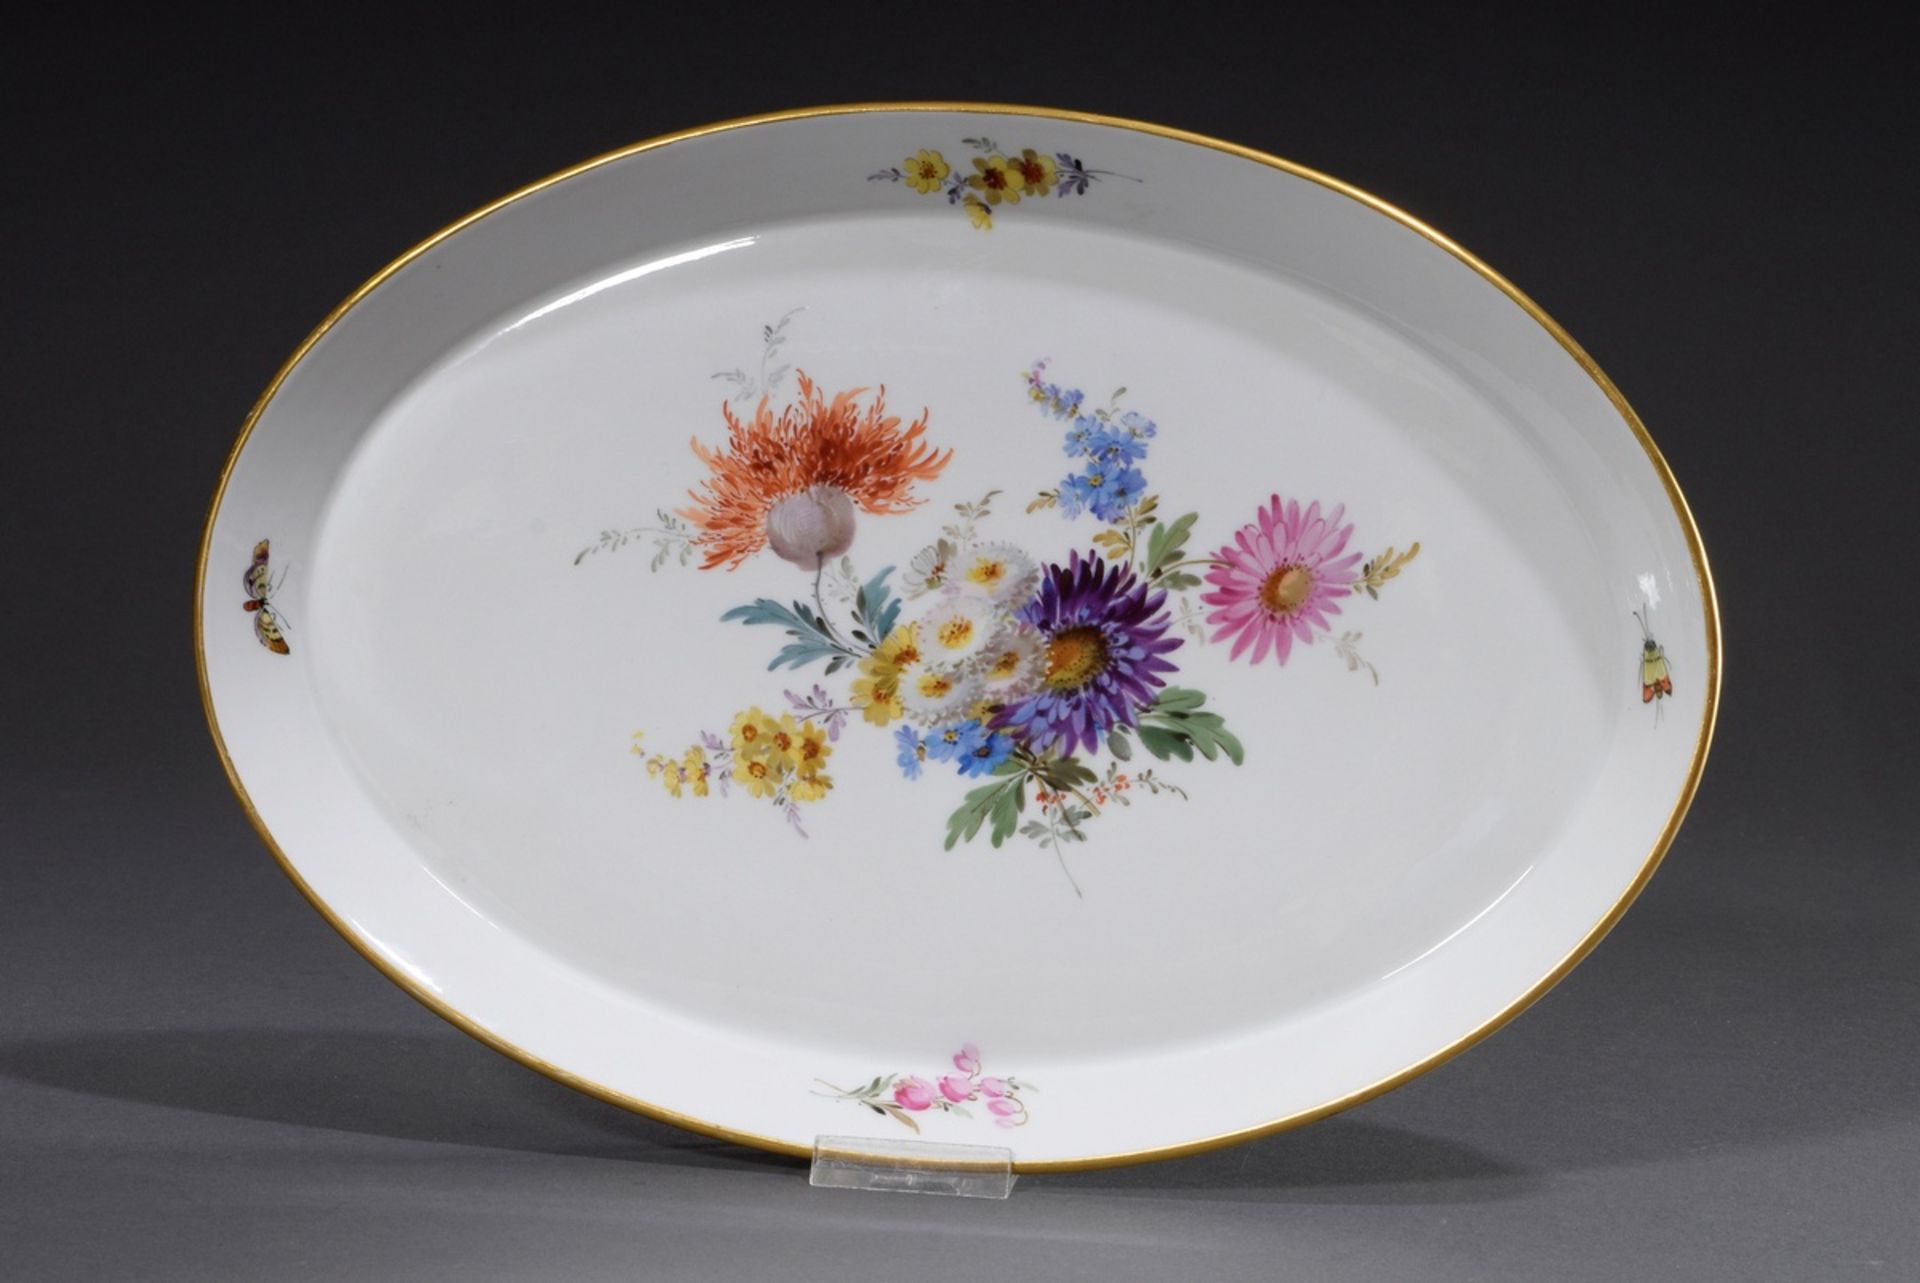 Ovales Meissen Tablett "Blumenbouquet und Insekten | Oval Meissen tray "Flower bouquet and insects" - Bild 2 aus 5